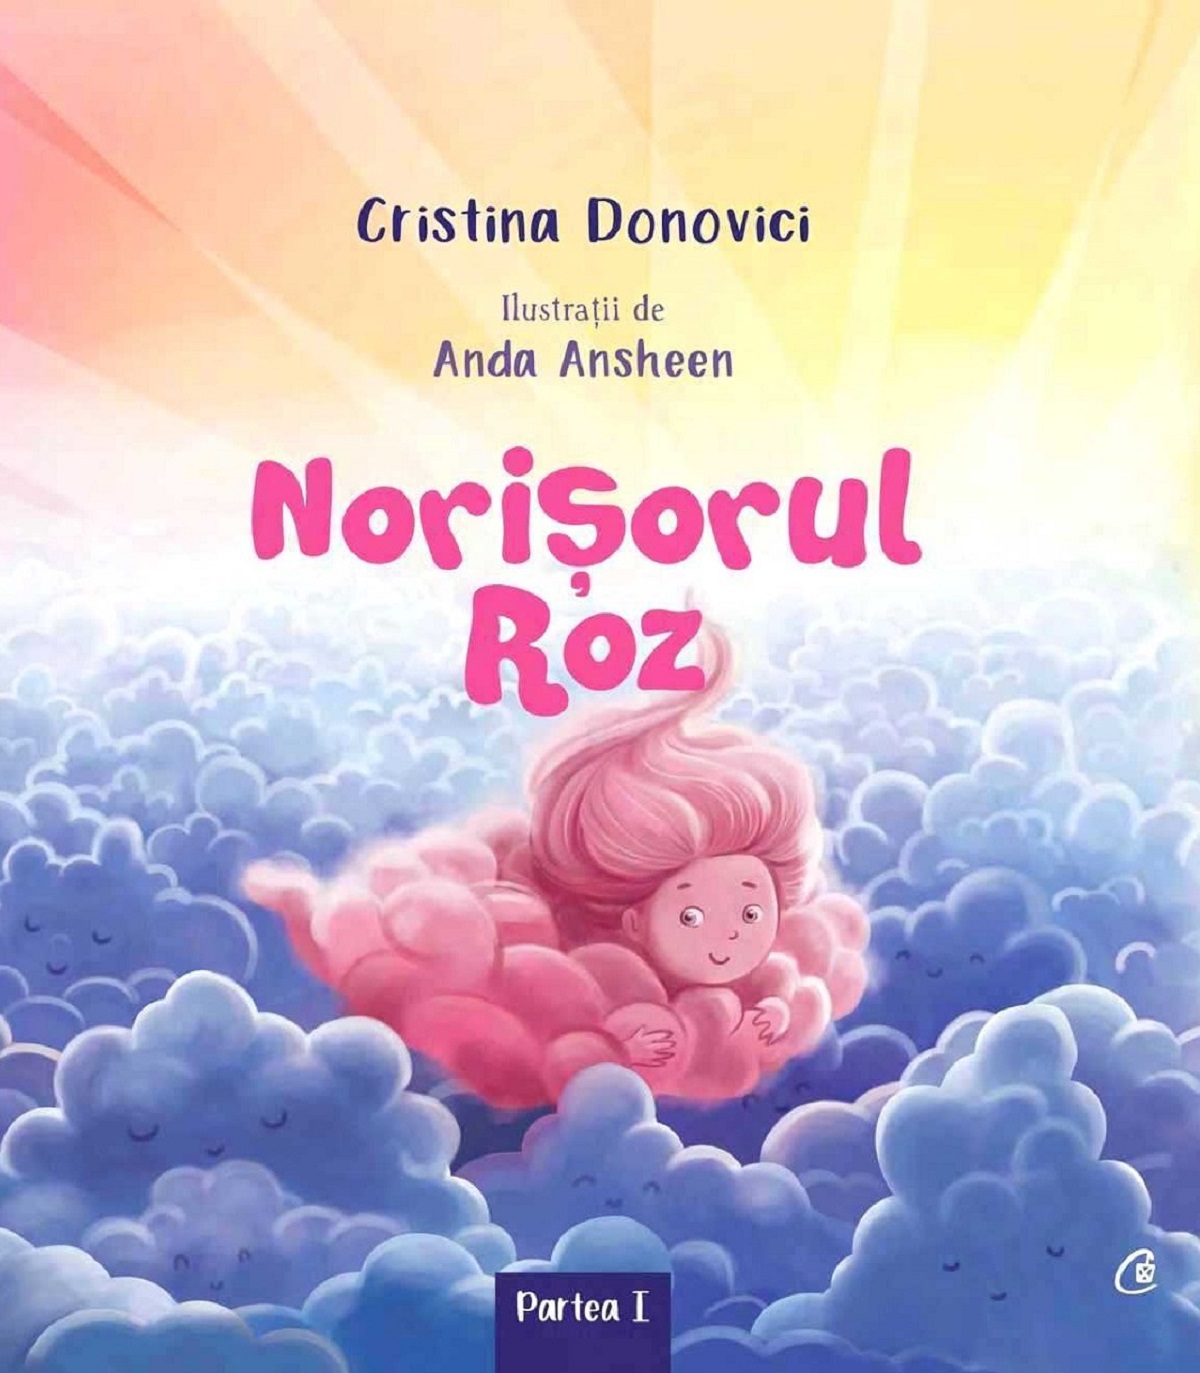 Norisorul roz - Cristina Donovici